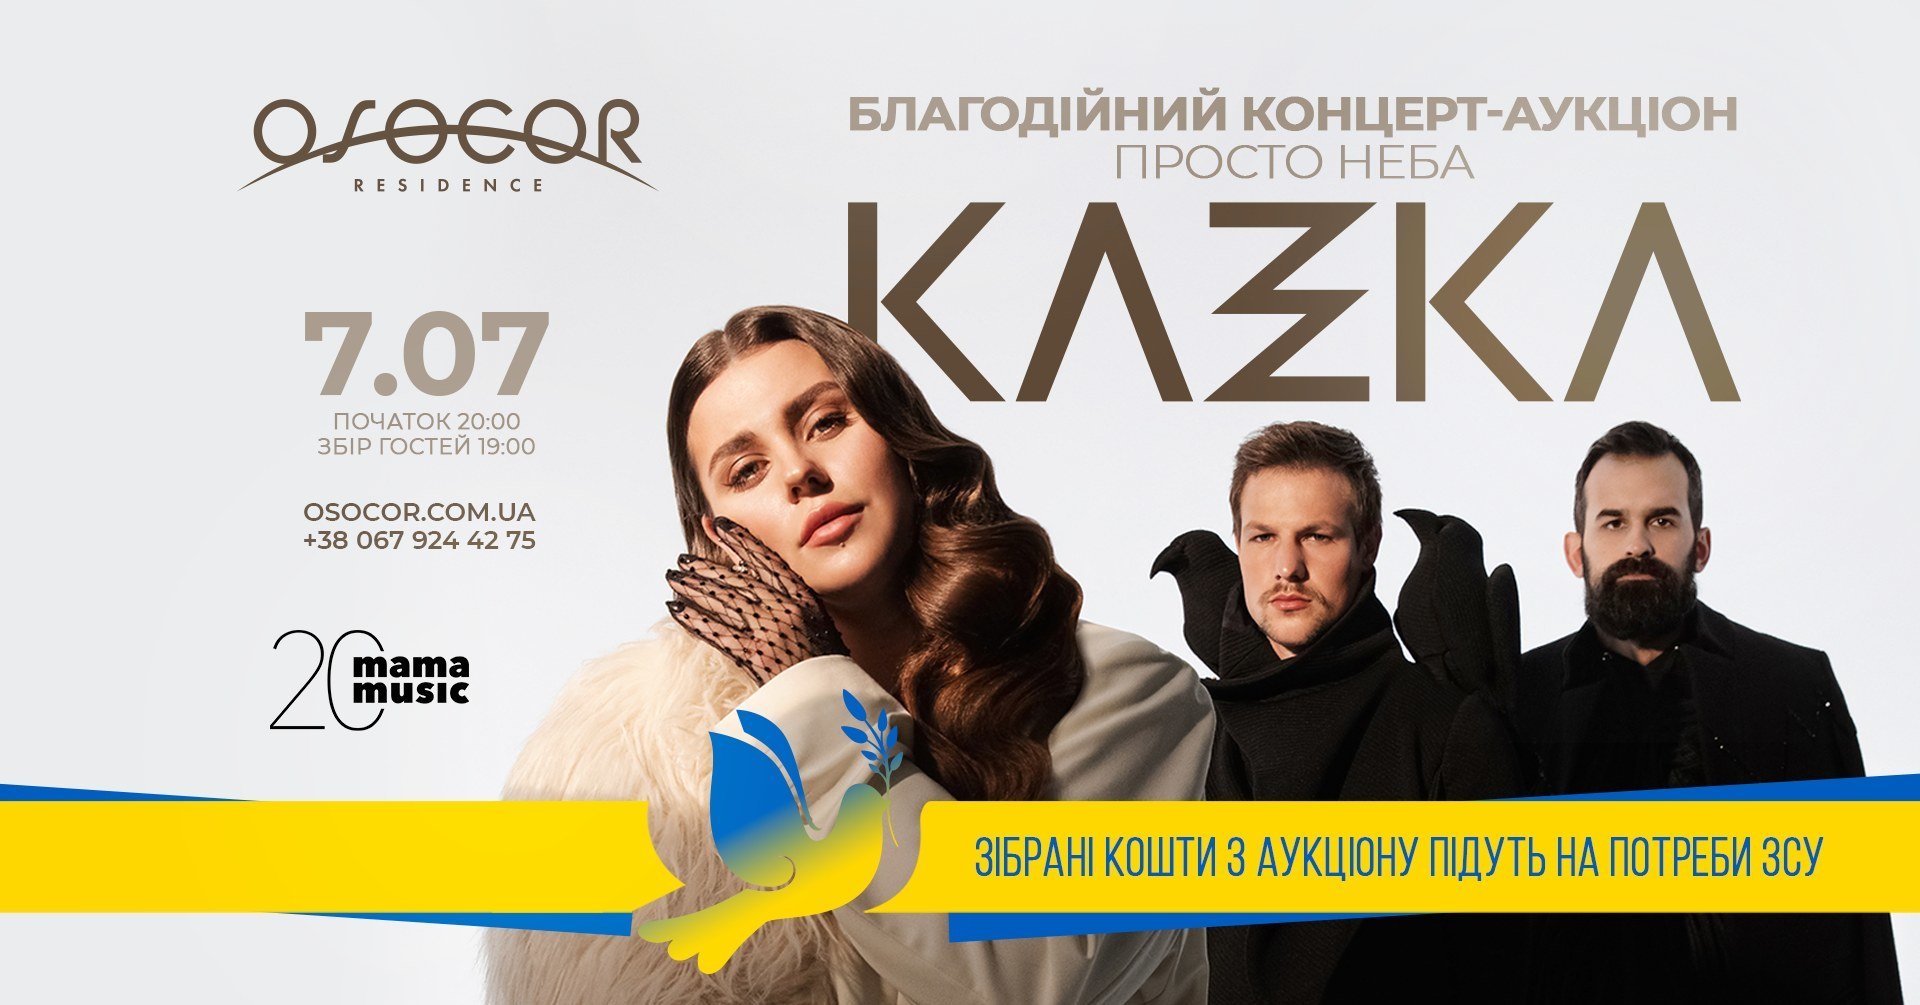 Благотворительный концерт-аукцион группы Kazka